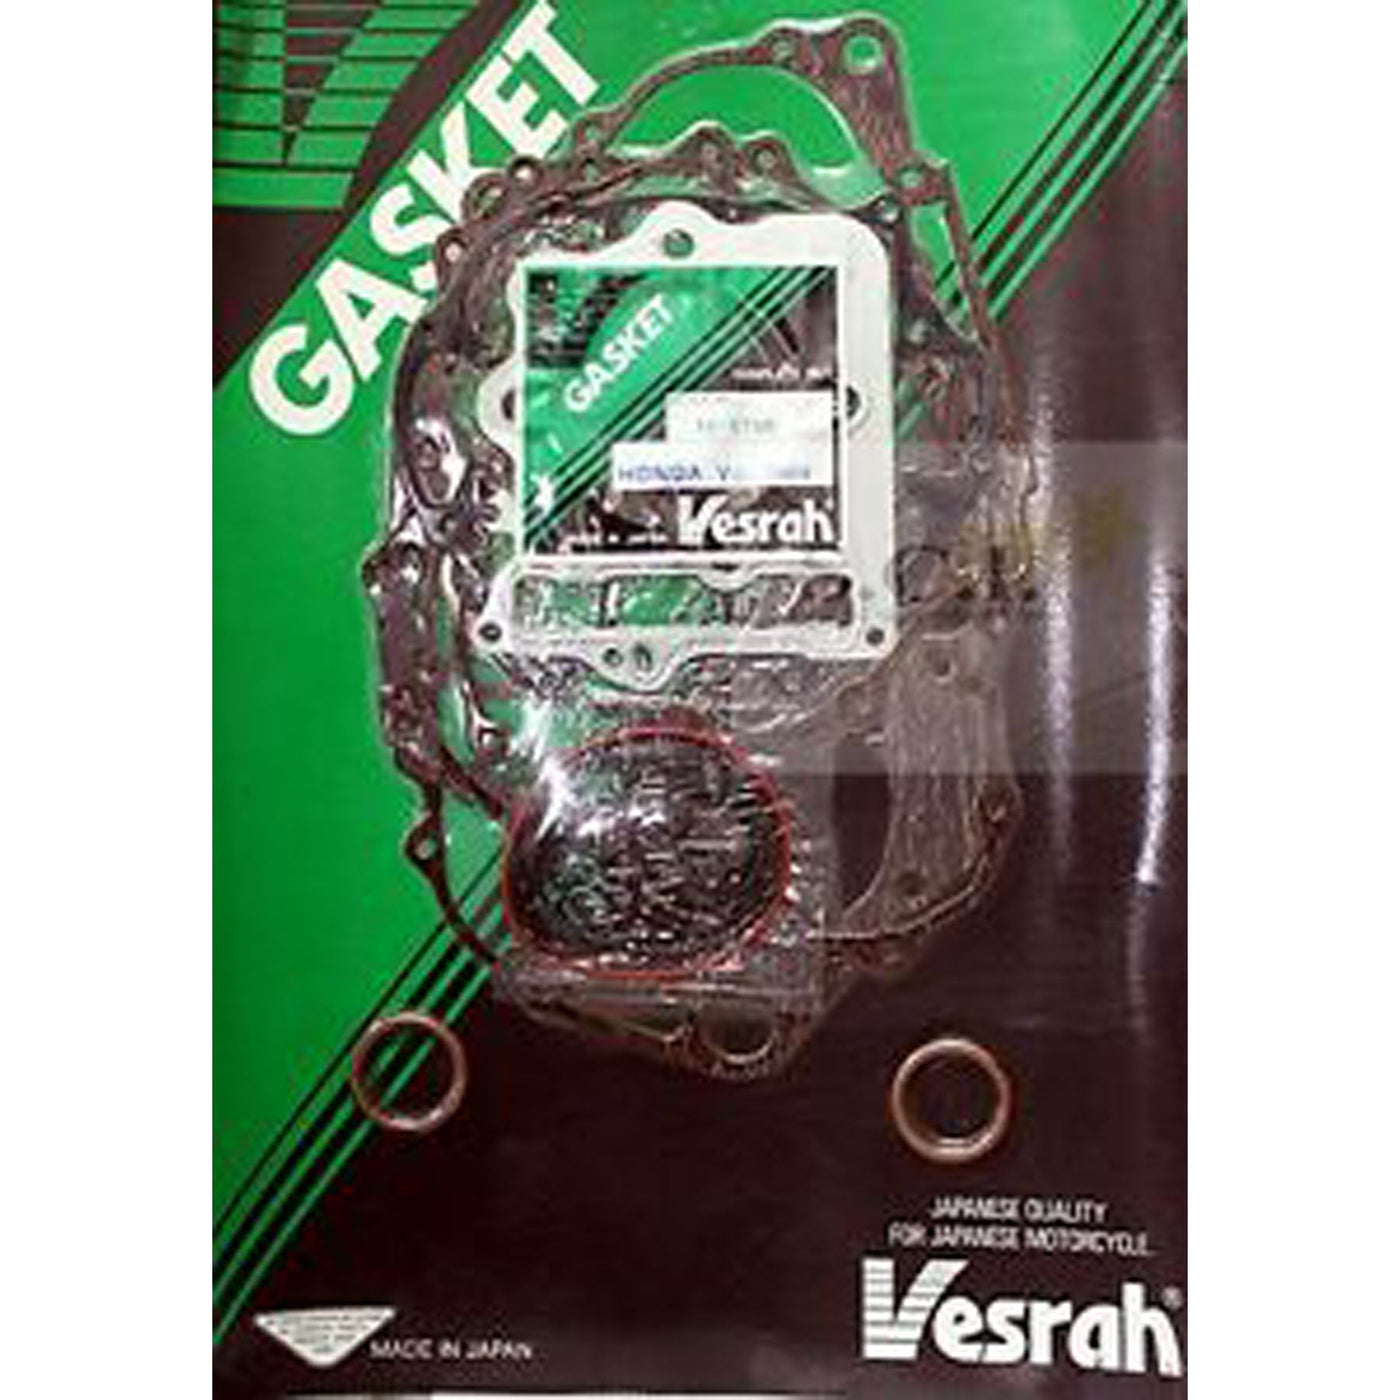 Vesrah VG-1183-M Complete Gasket Set #VG-1183-M